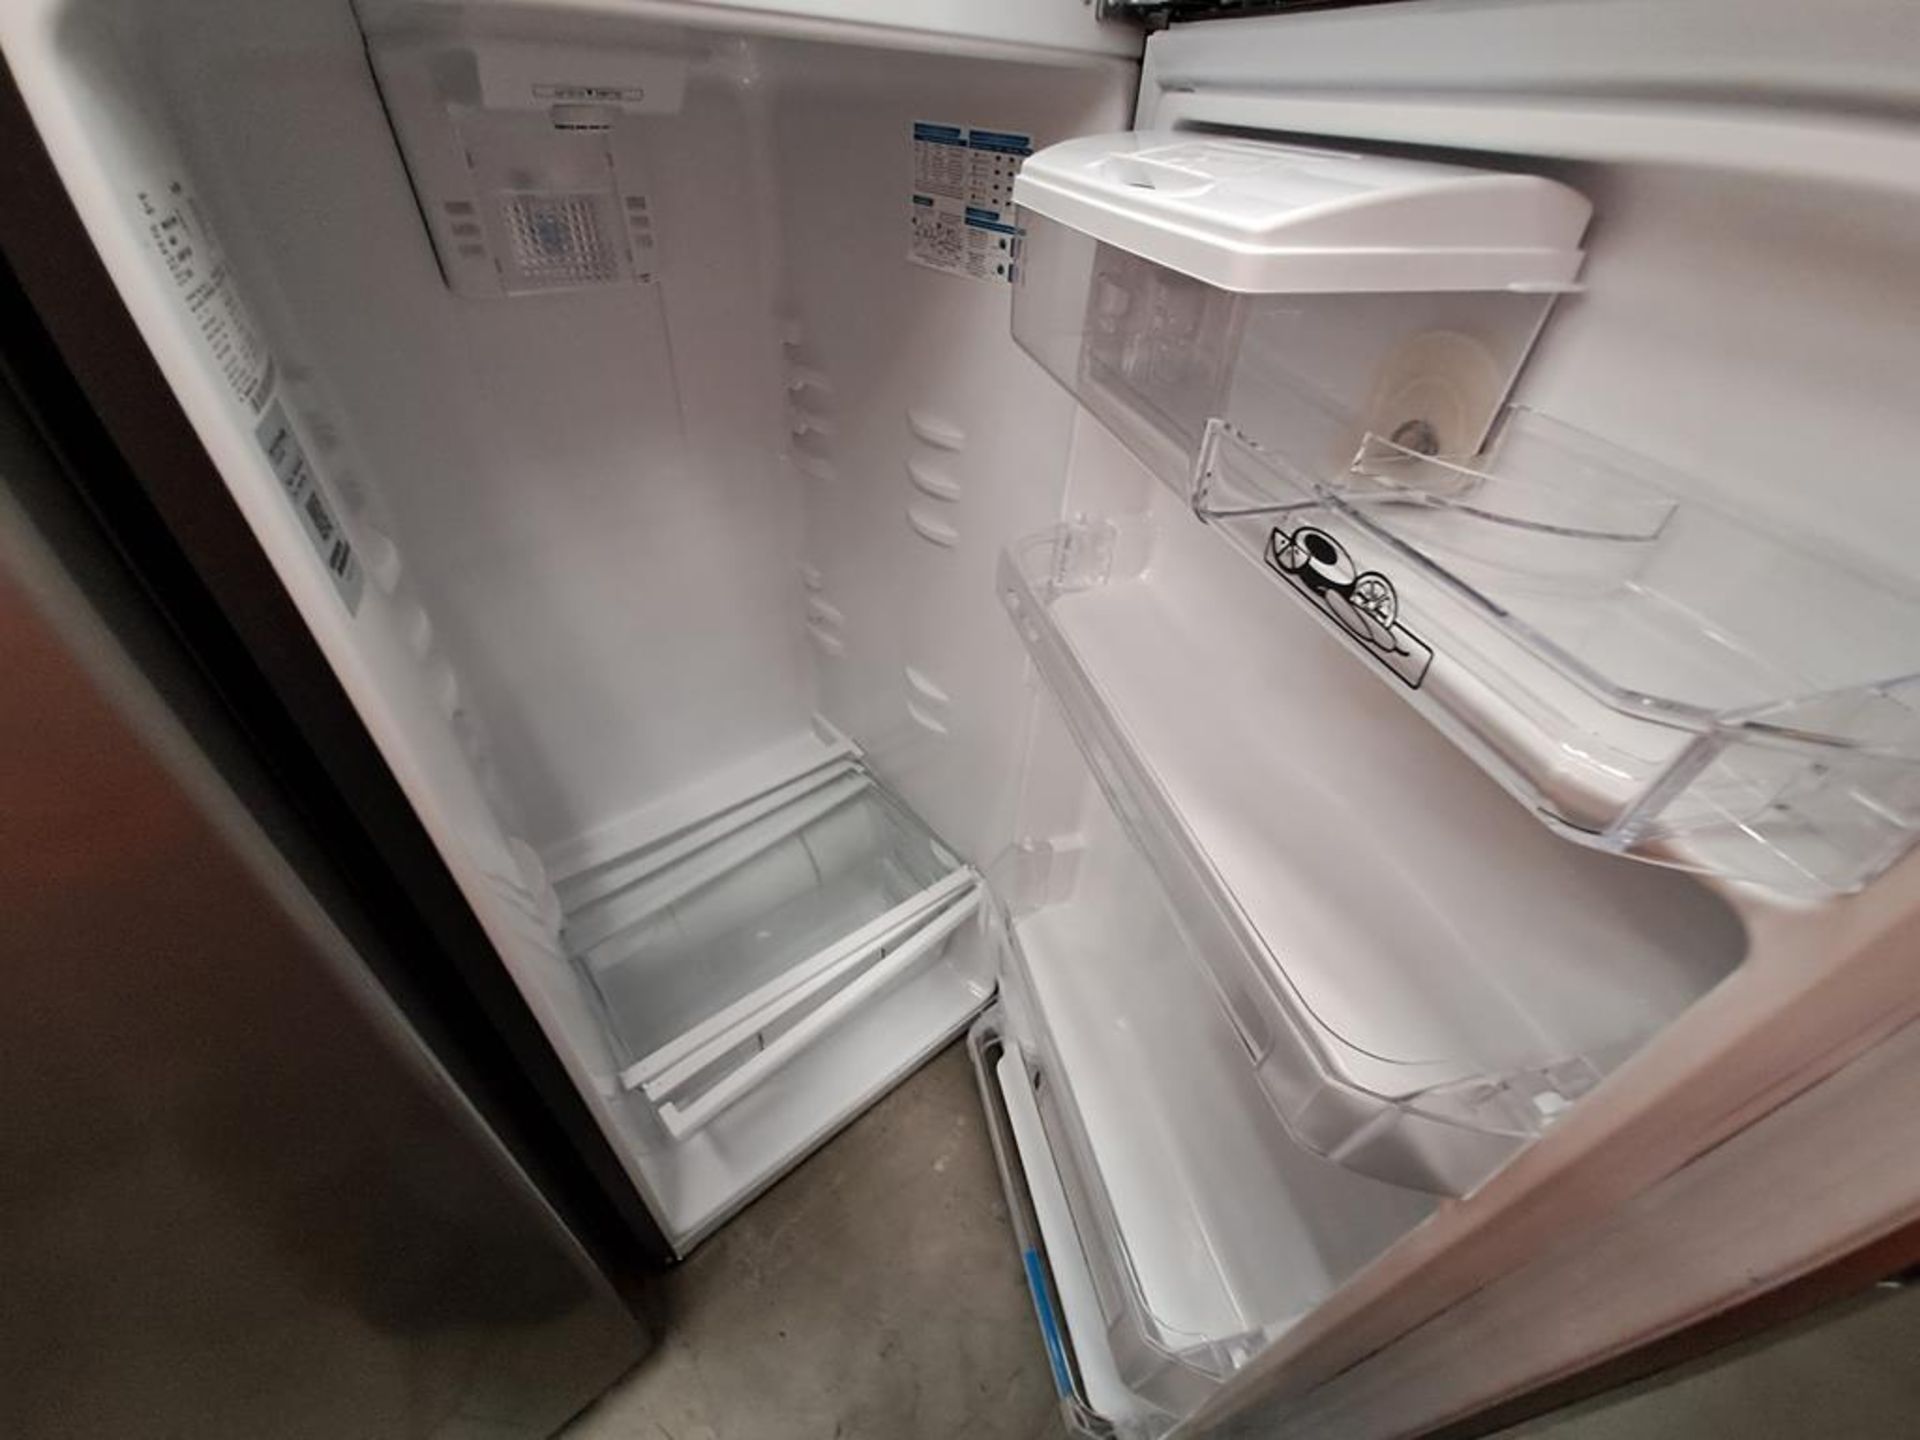 (Equipo nuevo) Lote de 2 refrigeradores contiene: 1 refrigerador con dispensador de agua Marca MABE - Image 9 of 10